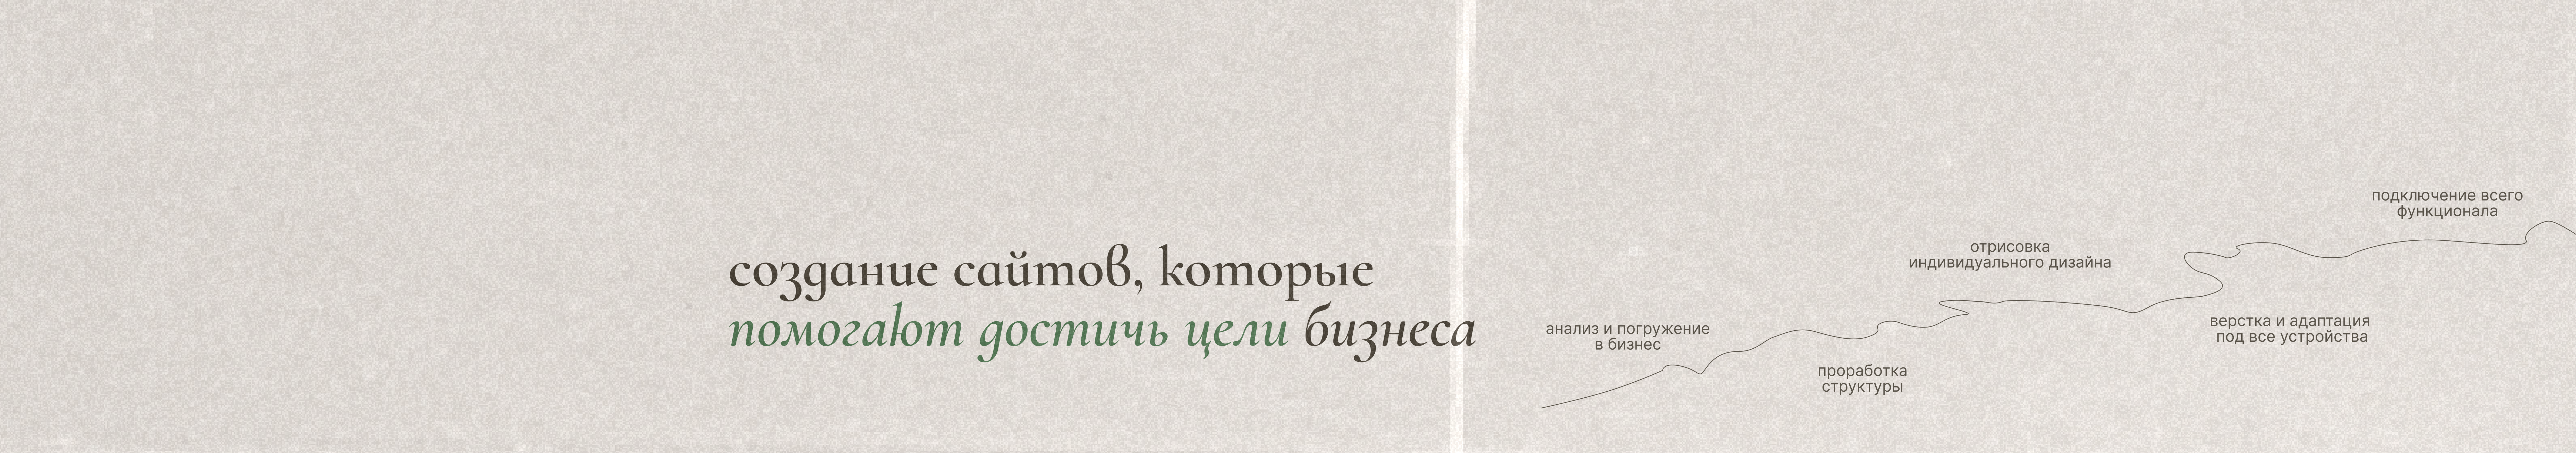 Ксения Авдеева's profile banner